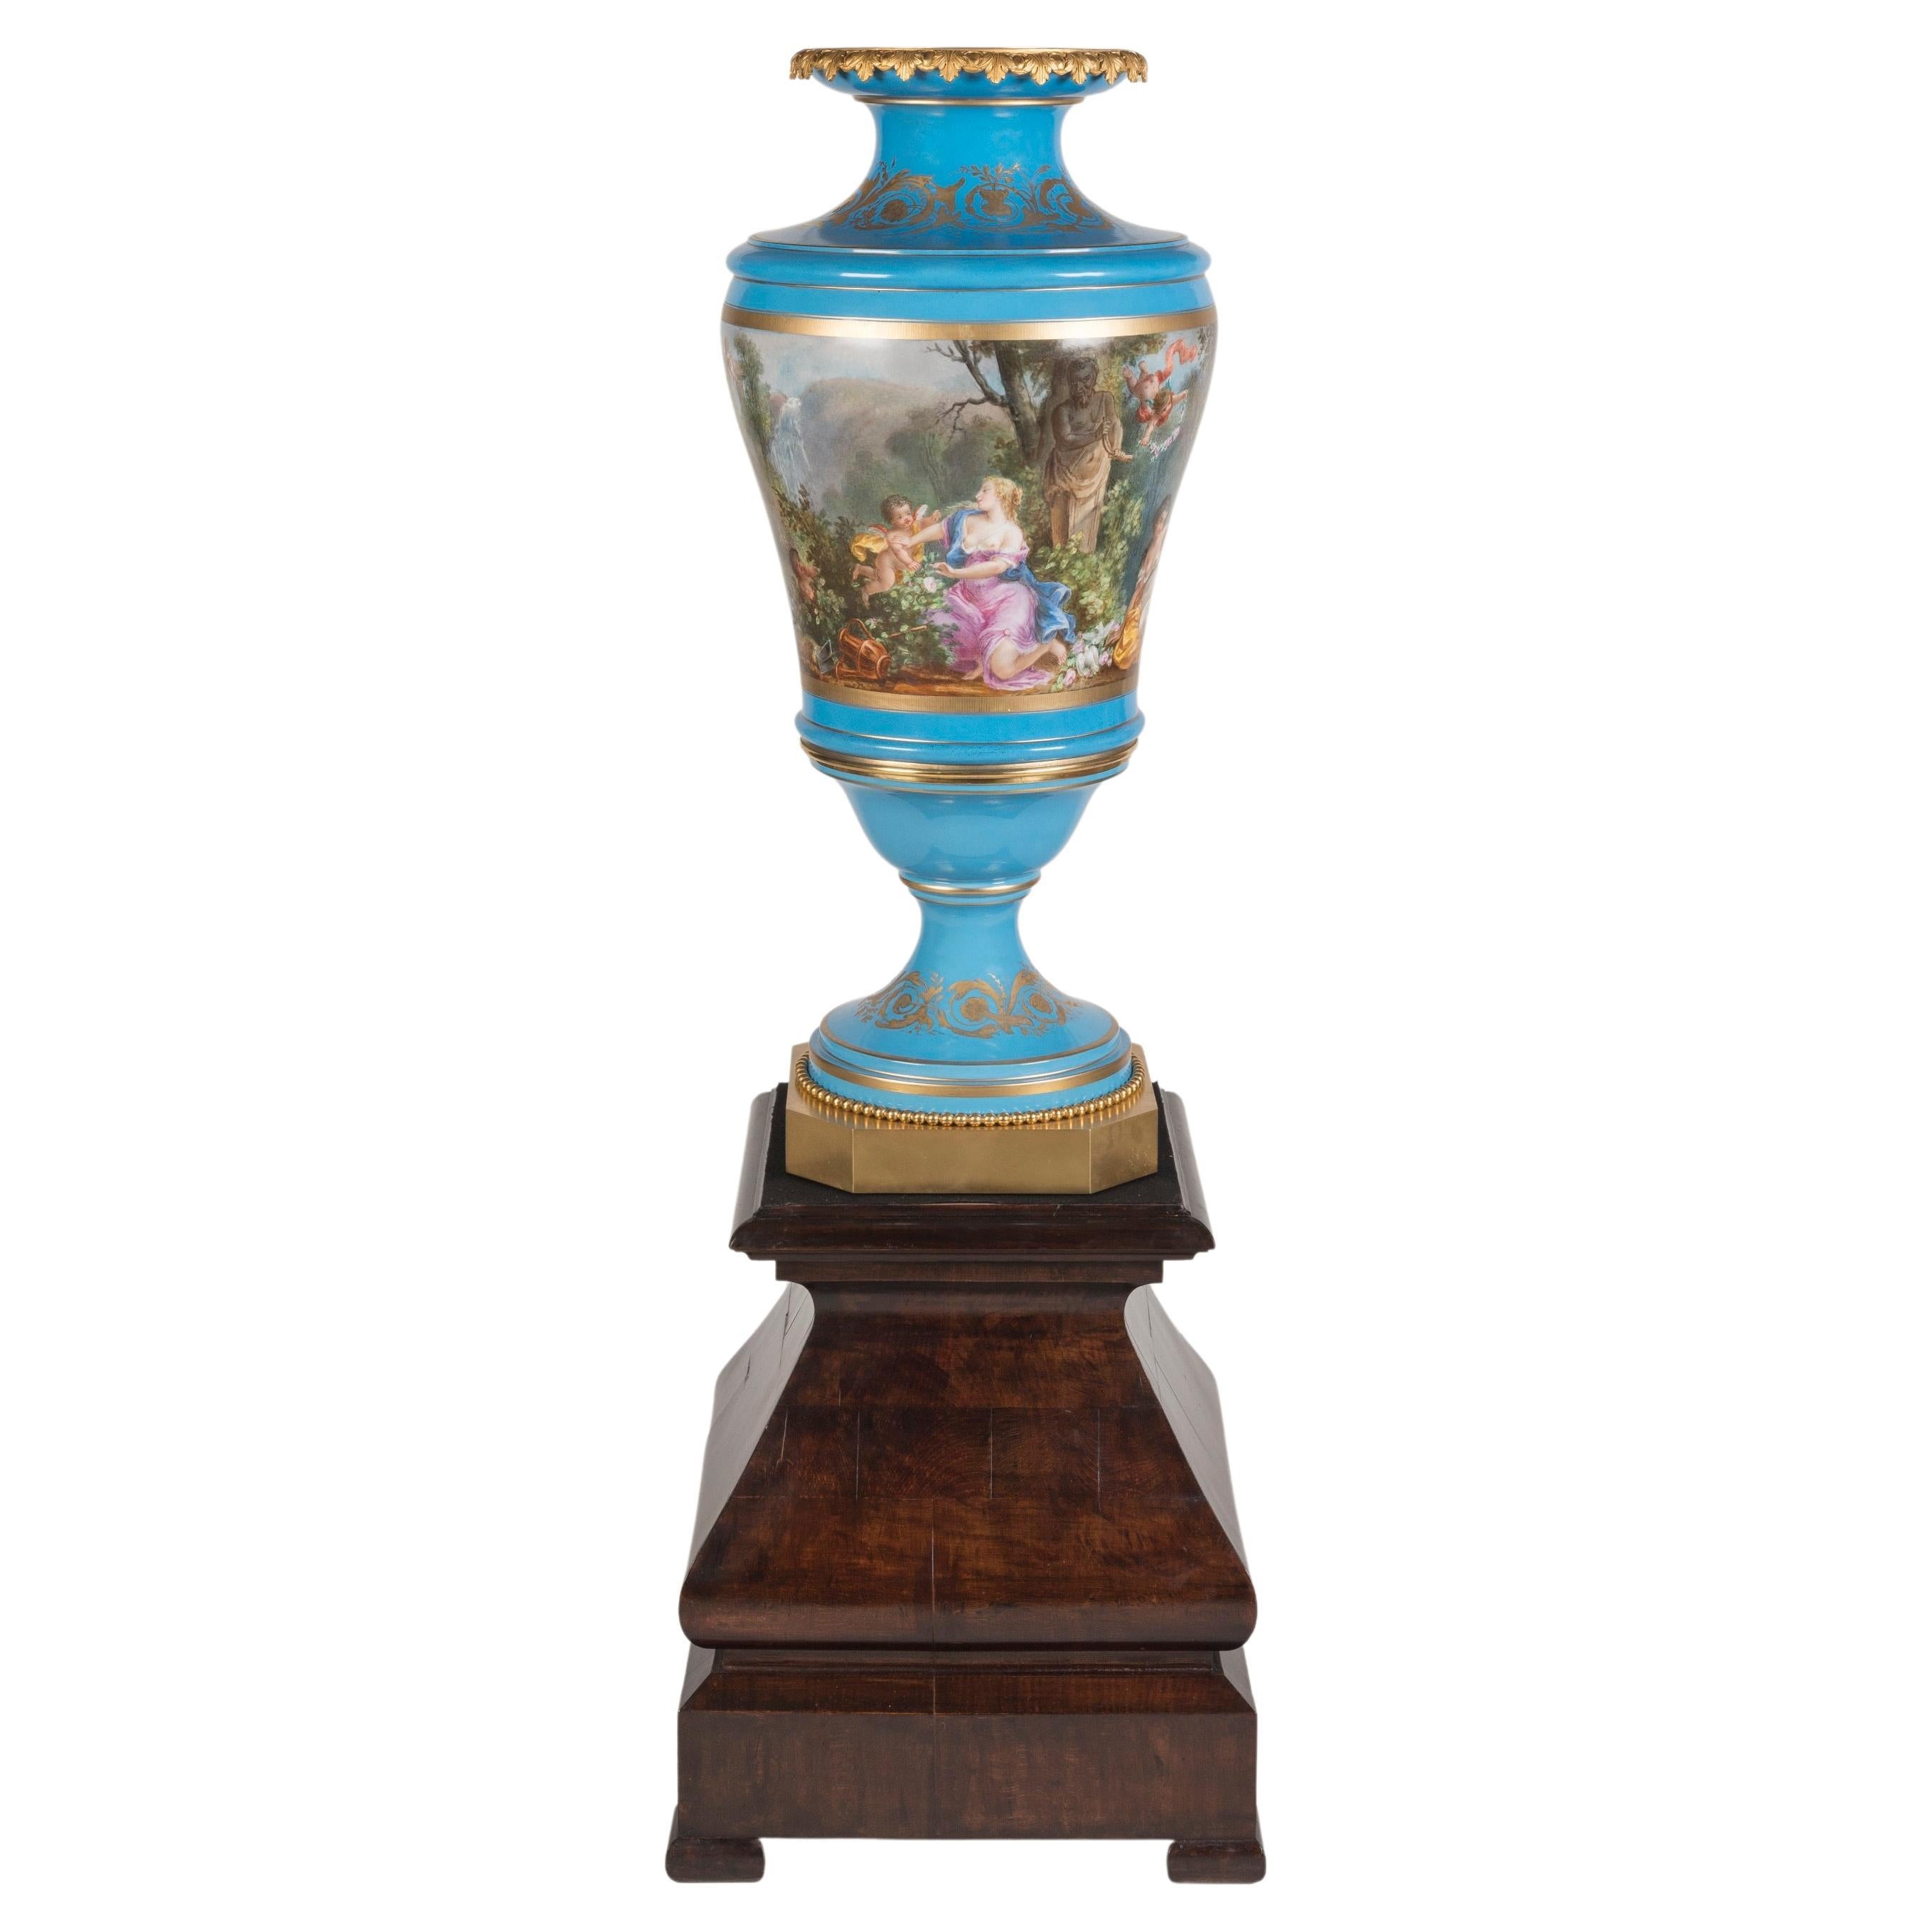 Très grand et impressionnant vase en porcelaine de style "Sèvres" du 19e siècle sur piédestal